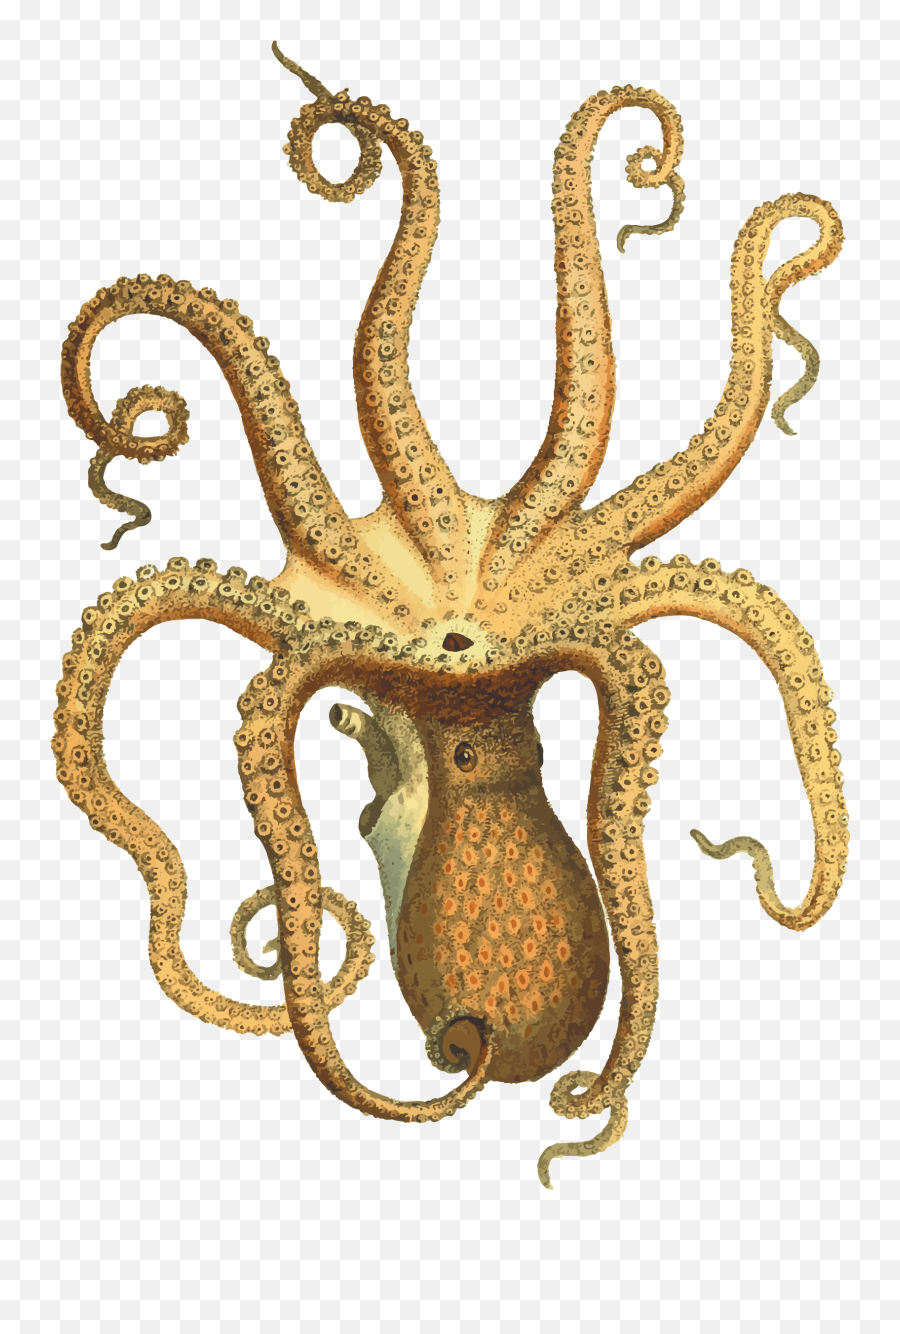 Octopus Png - Transparent Octopus Png,Octopus Png